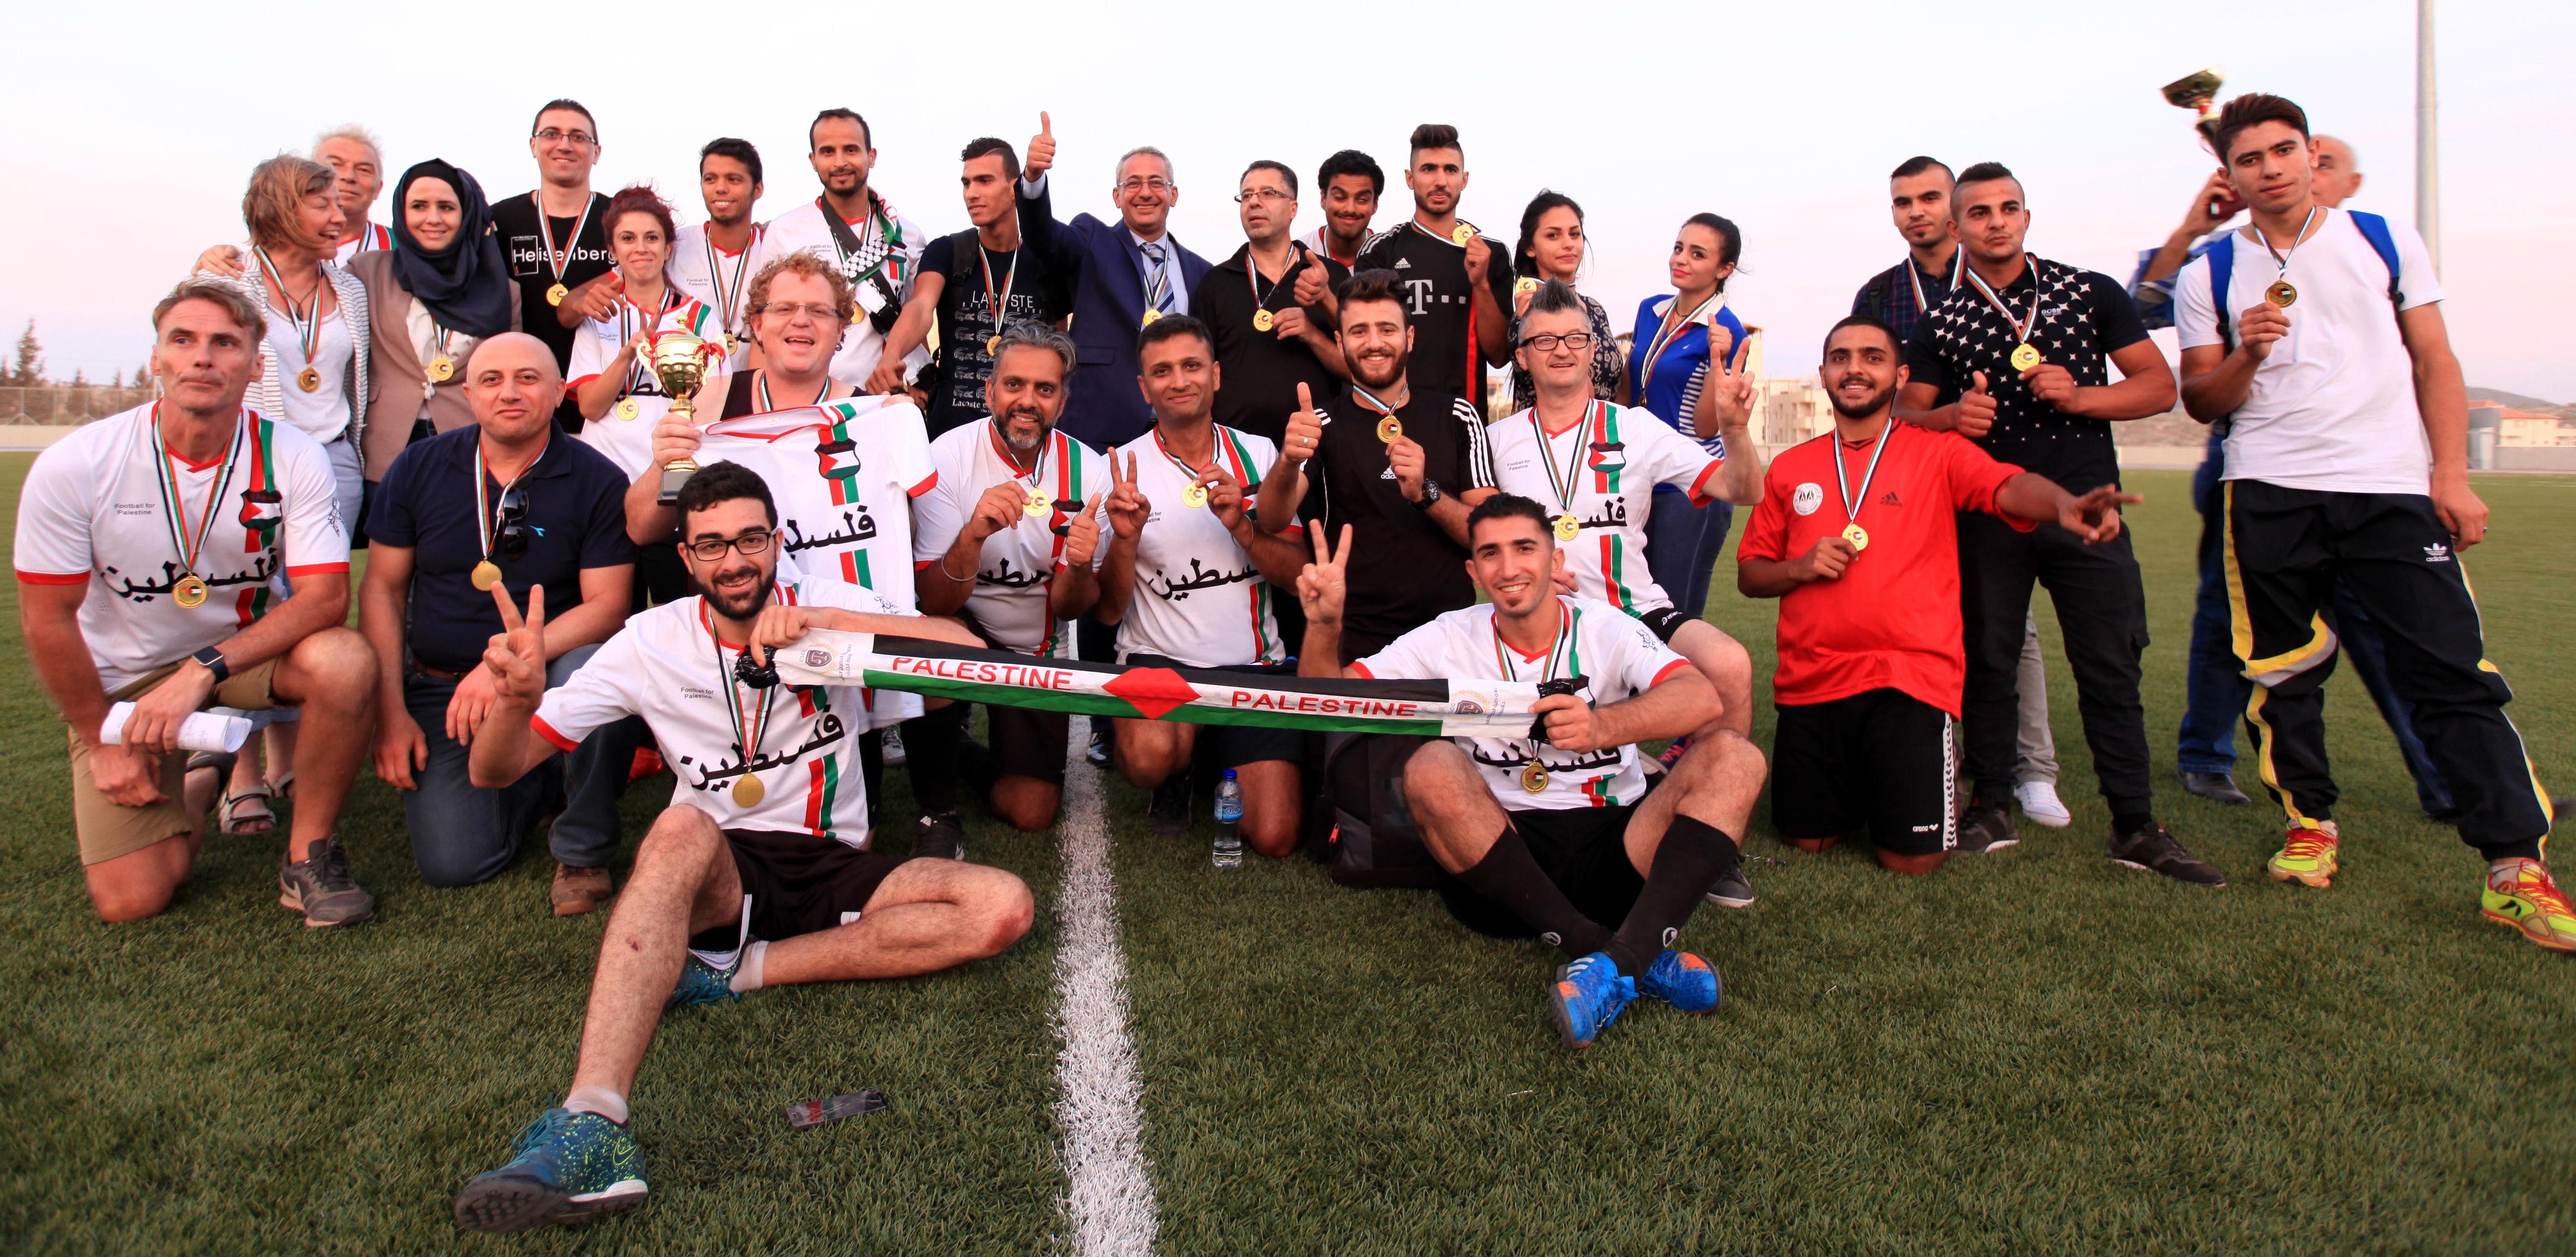 الجامعة العربية الأمريكية تستقبل الفريق البريطاني “كرة القدم من أجل فلسطين”